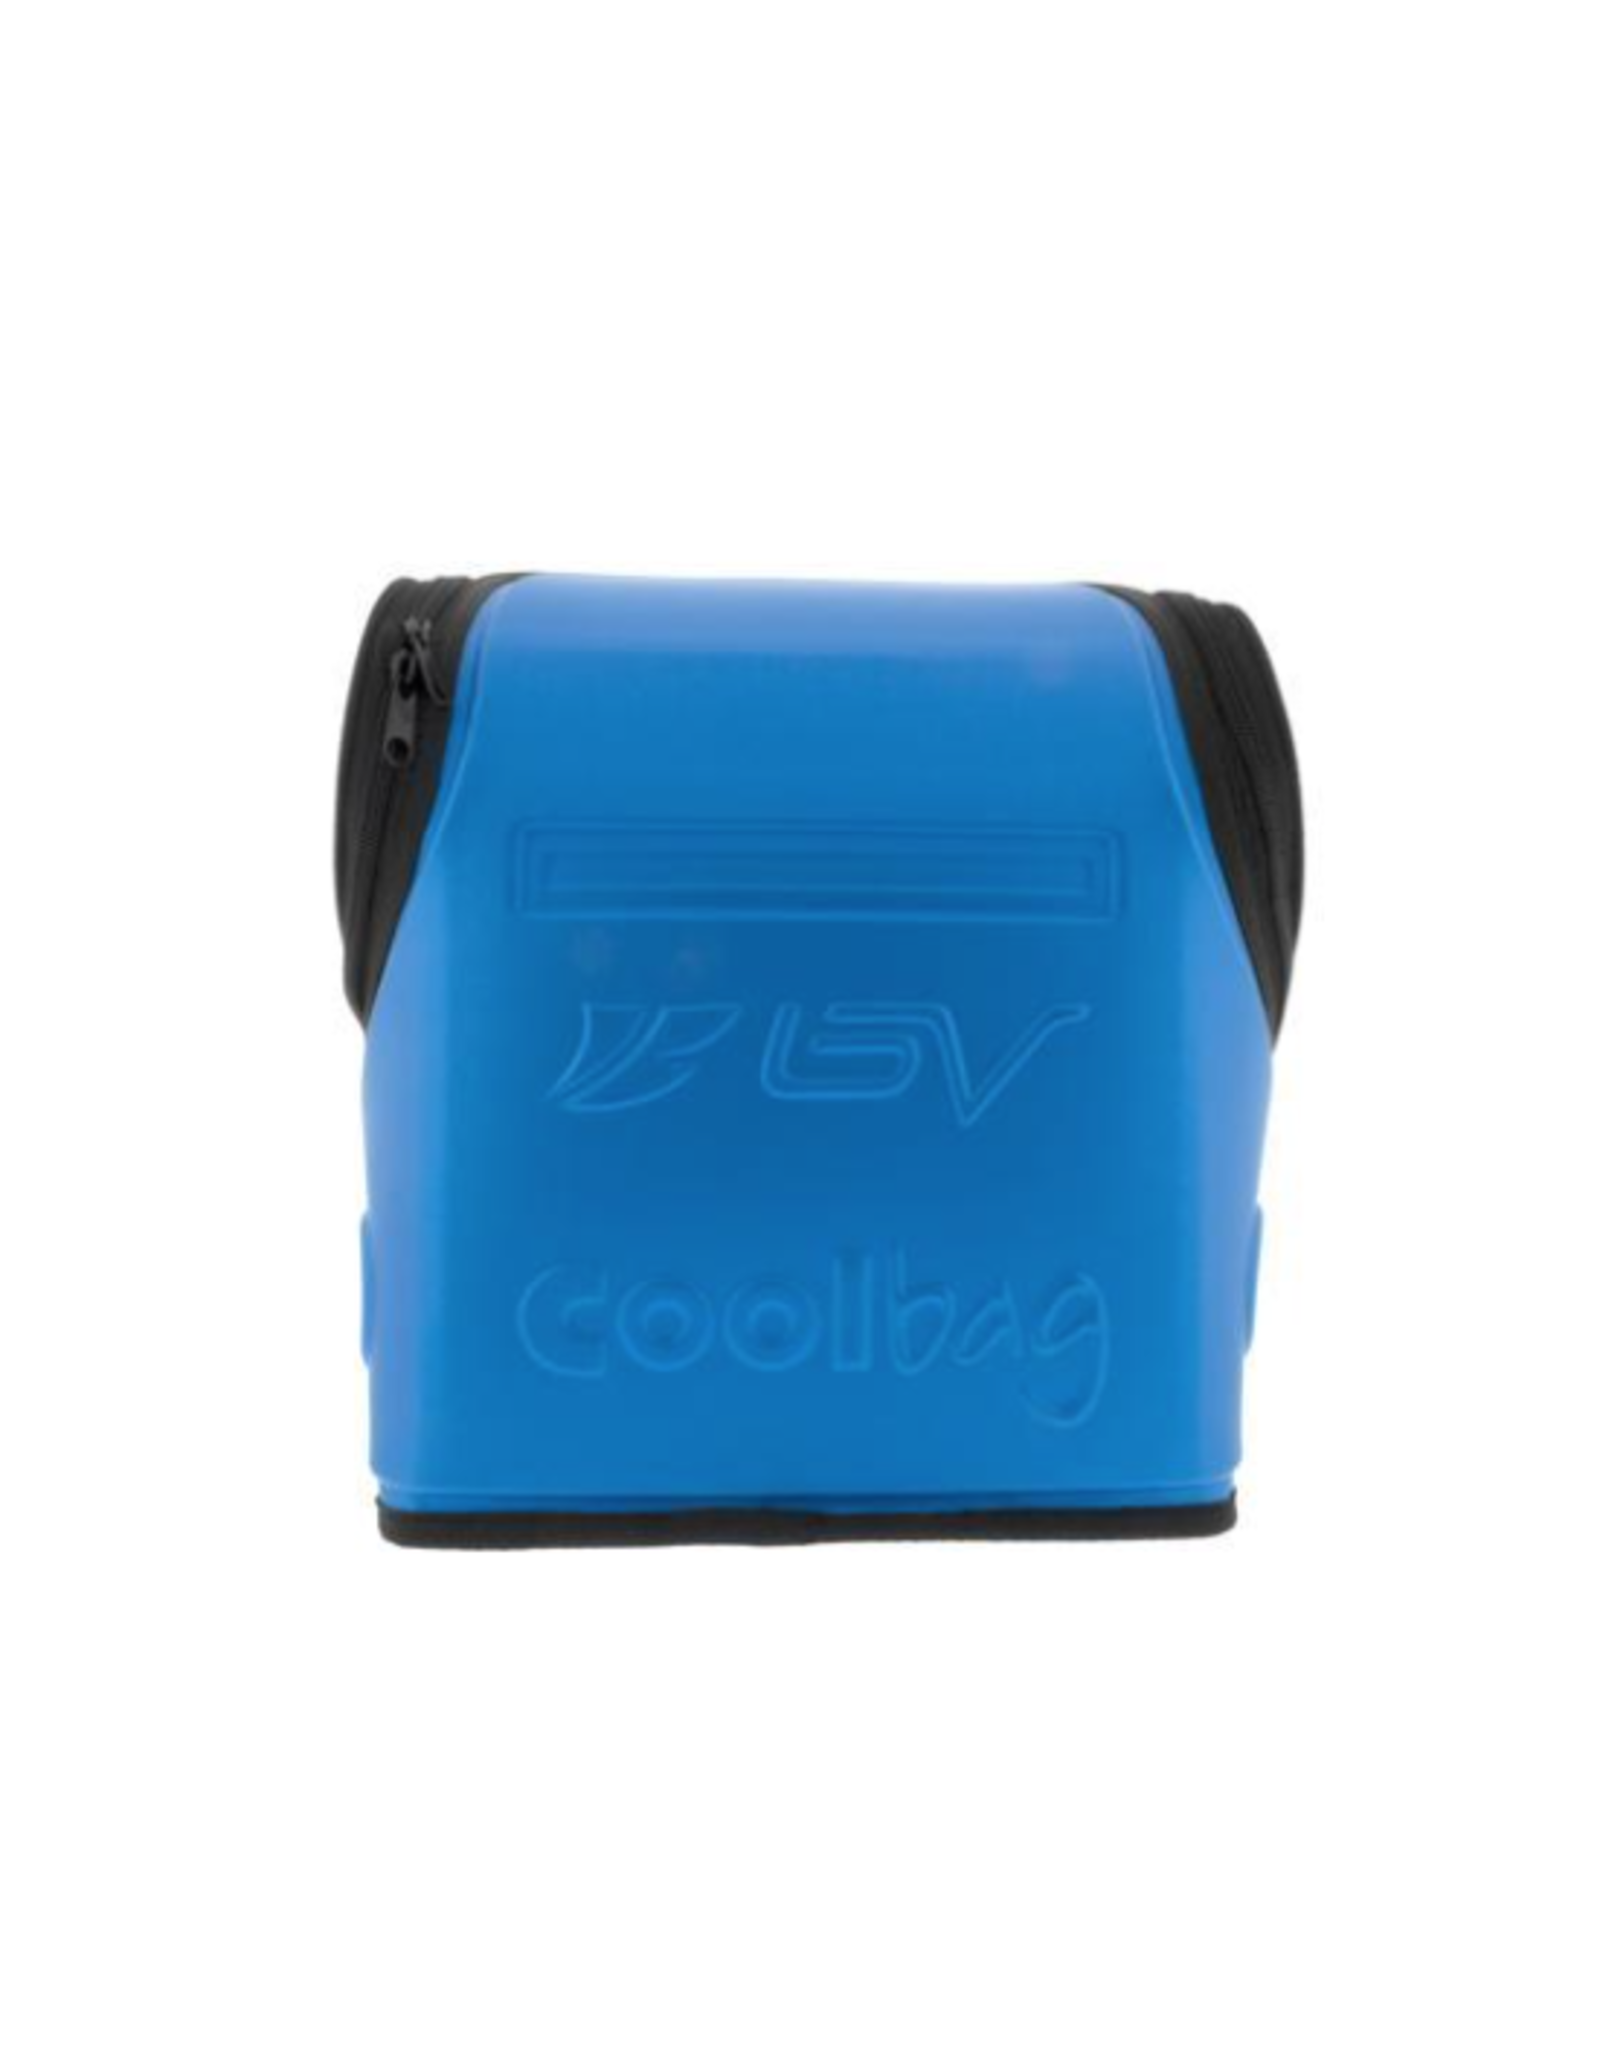 BV Insulated Handlebar Cooler Bag for Warm or Cold Items, Shoulder Strap Blue/Black & Quick-Release Handlebar Mount